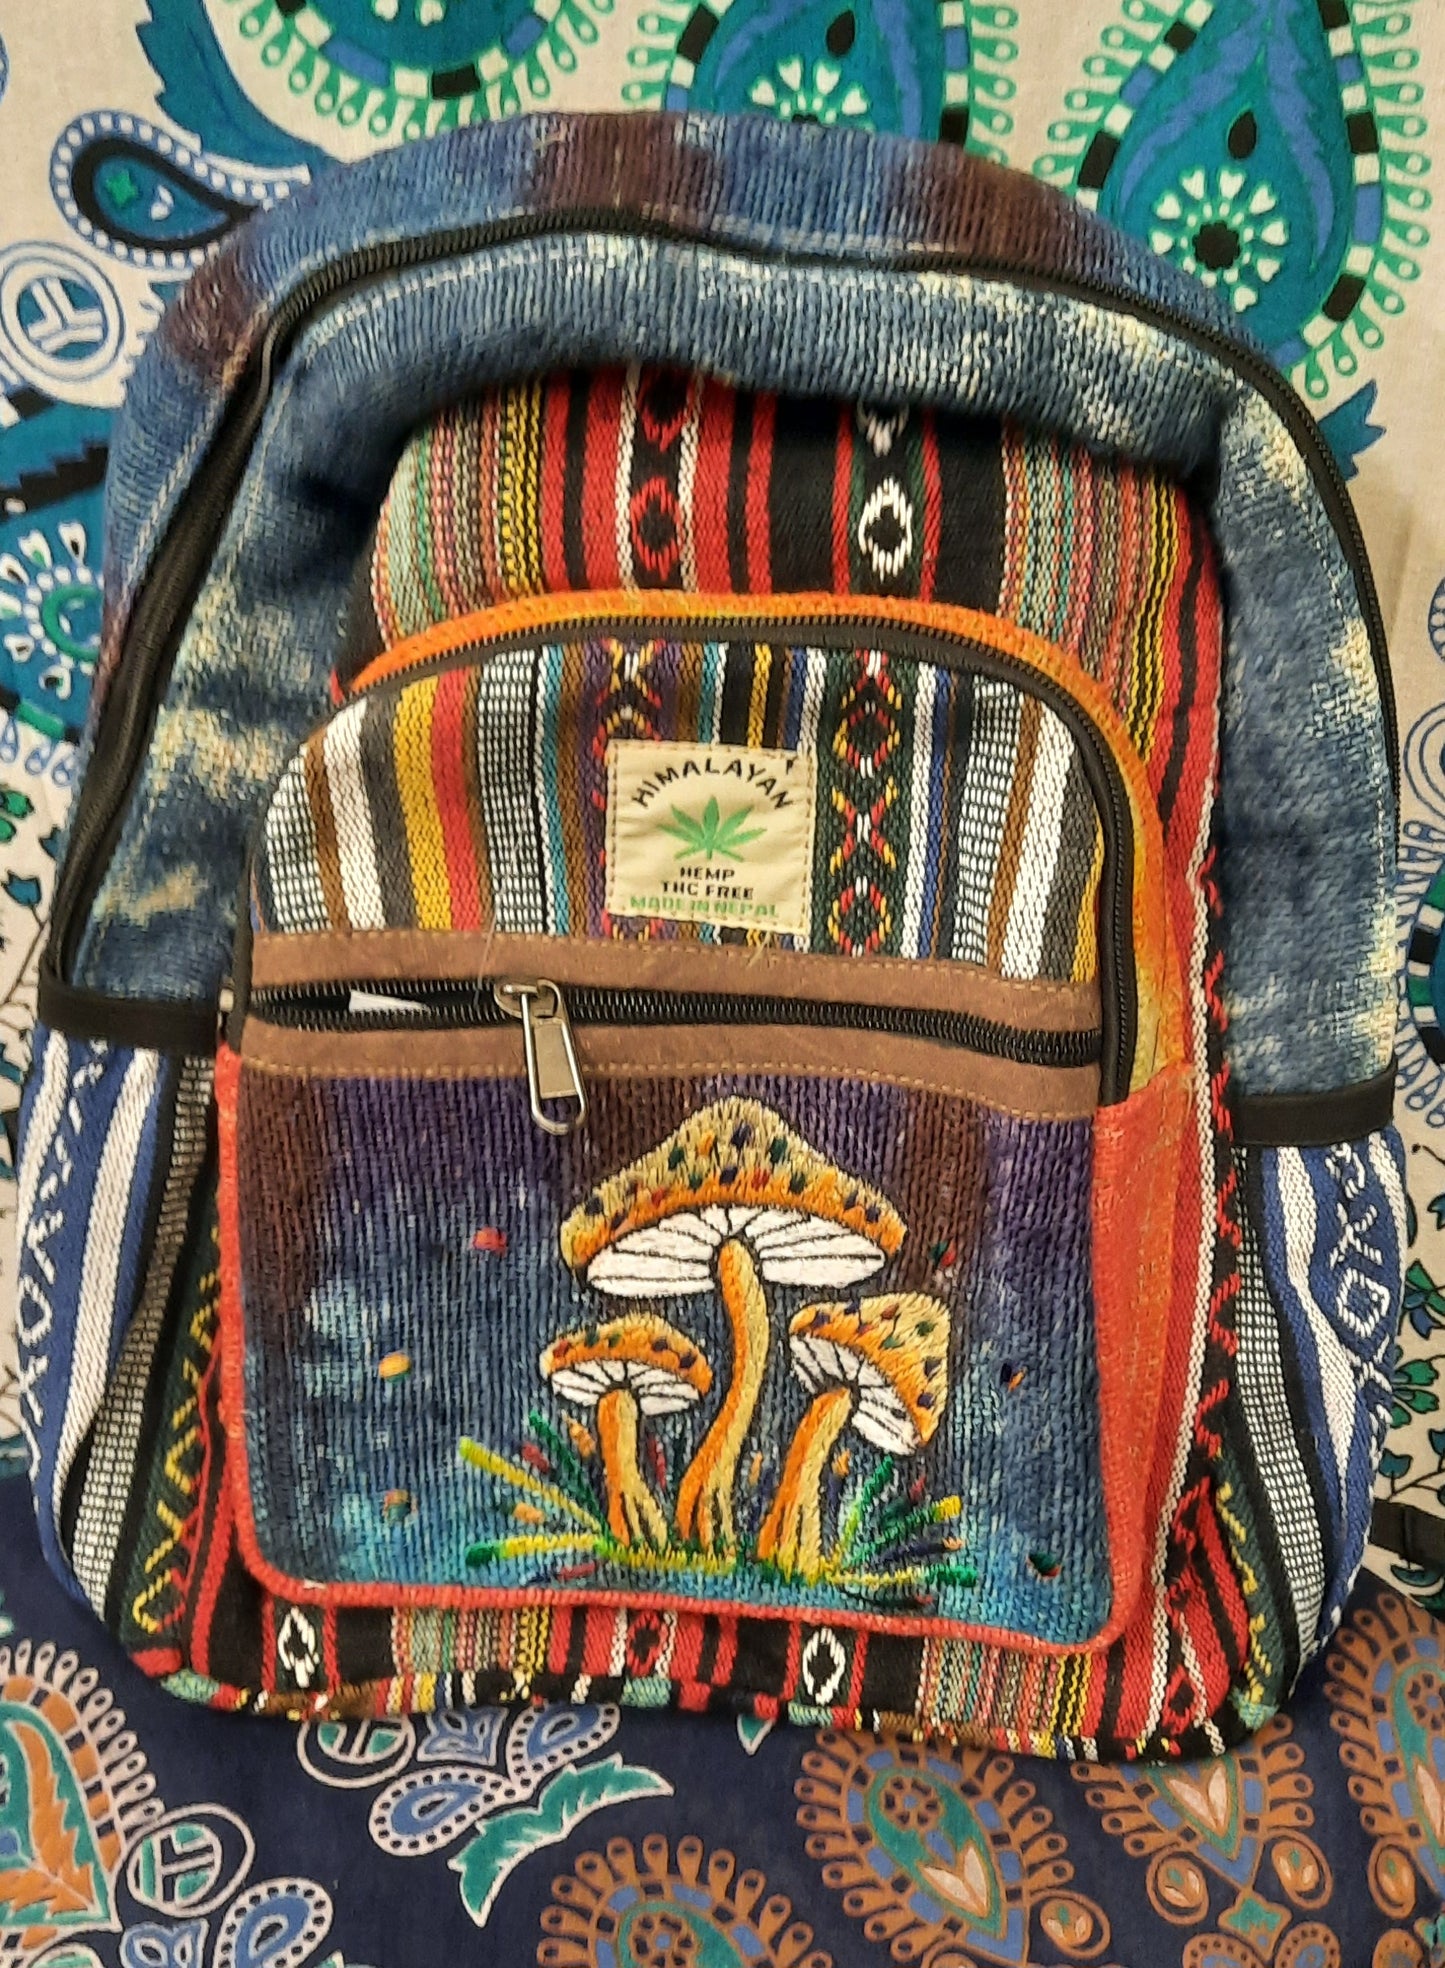 Hemp mushroom rucksack backpack festival hippy bag